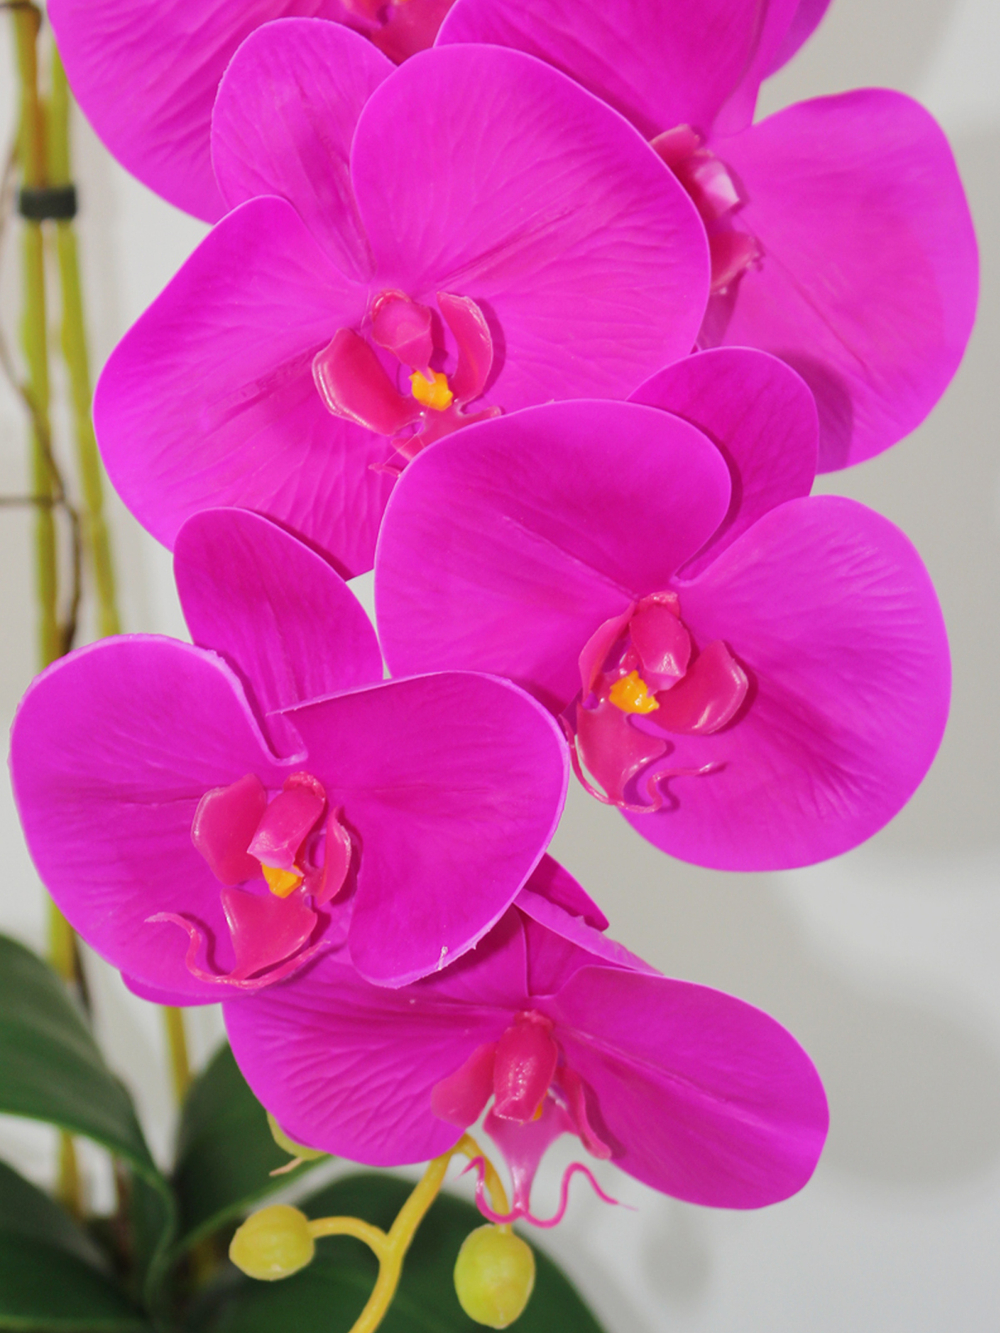 Искусственные Орхидеи фуксия 2 ветки латекс 55см в кашпо